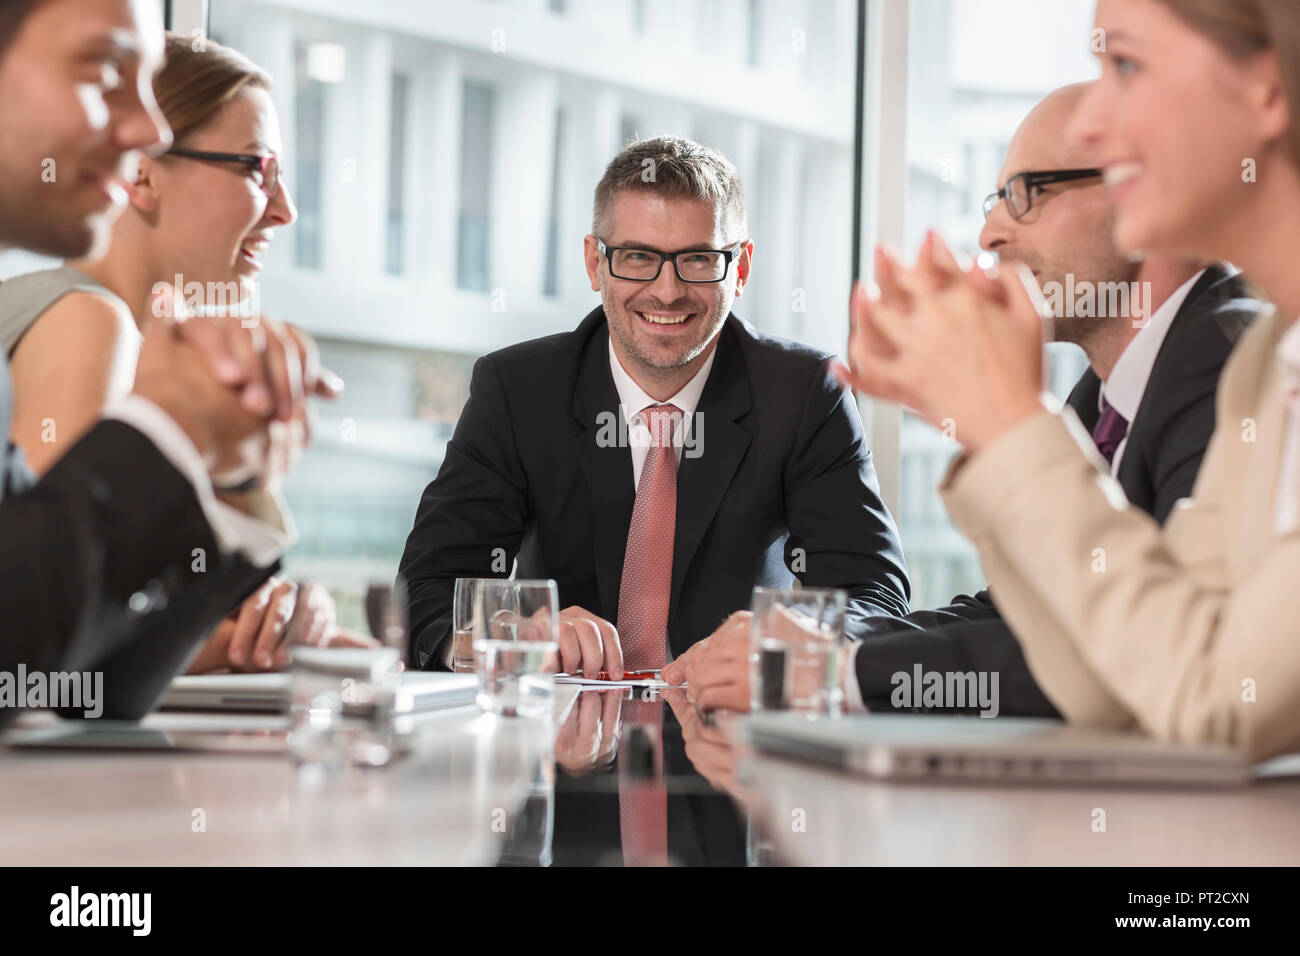 Polen, Warzawa, Treffen der fünf Geschäftsleute im Konferenzraum Stockfoto